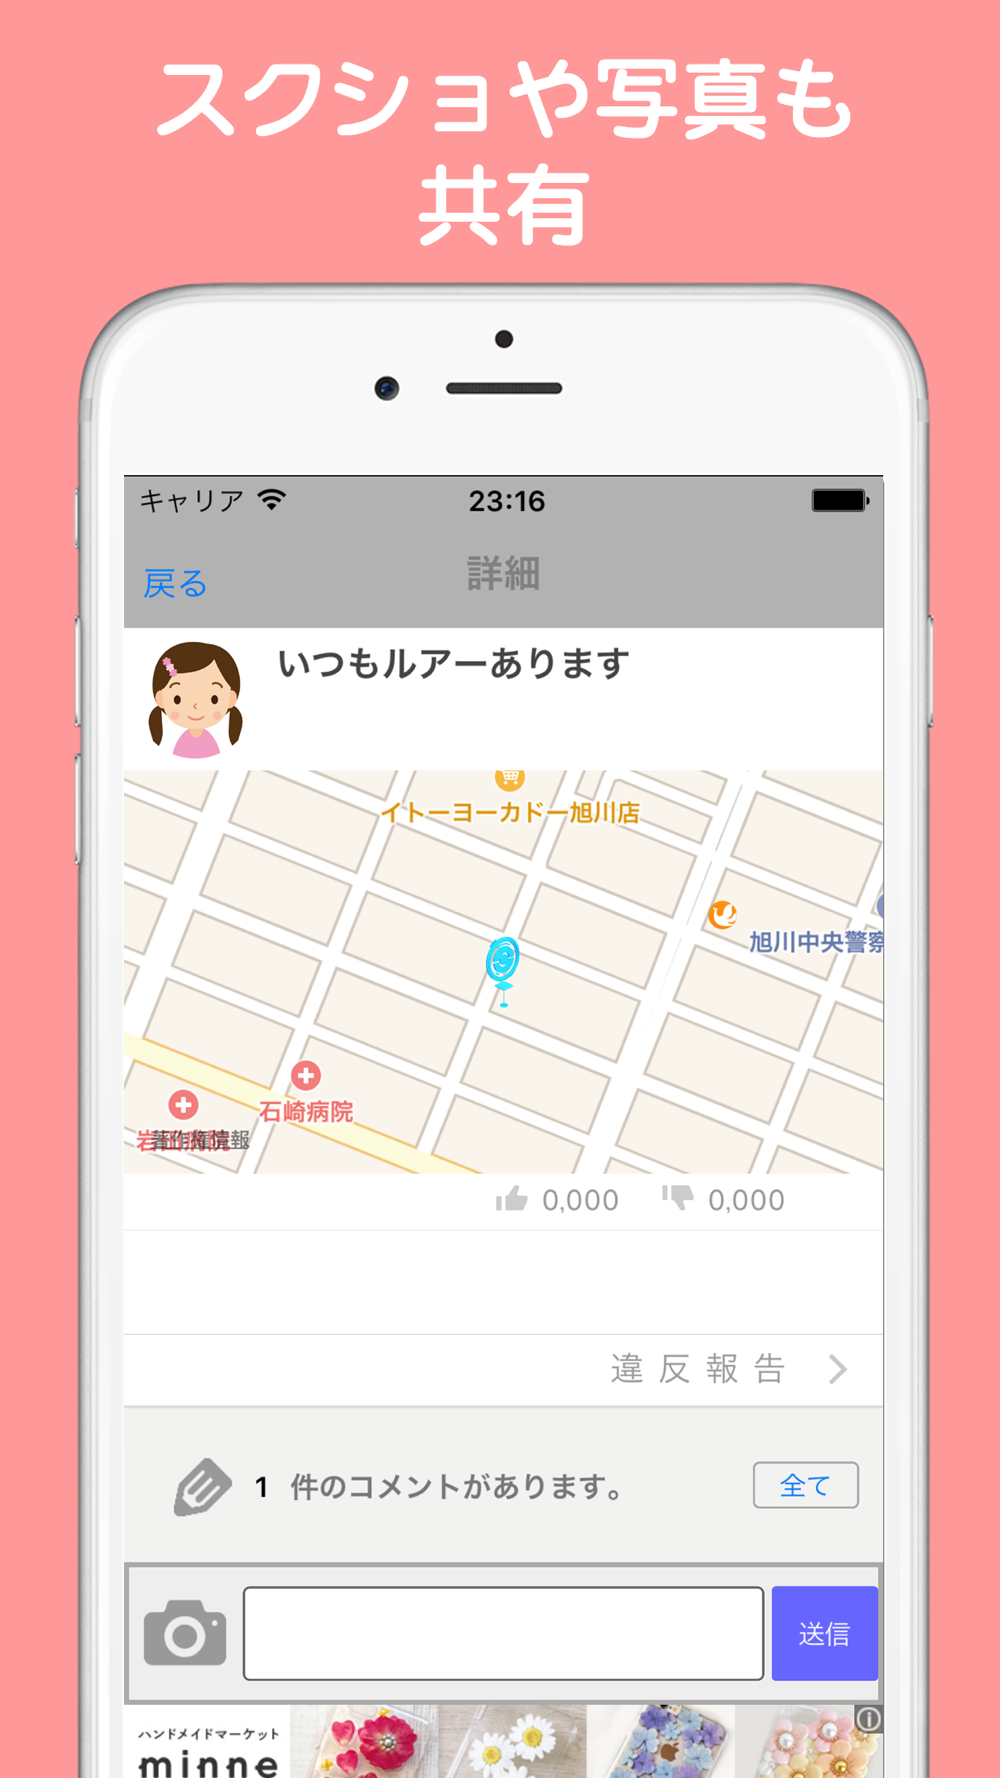 ポケレーダー ポケモンの居場所などの攻略掲示板 For ポケモンgo Free Download App For Iphone Steprimo Com